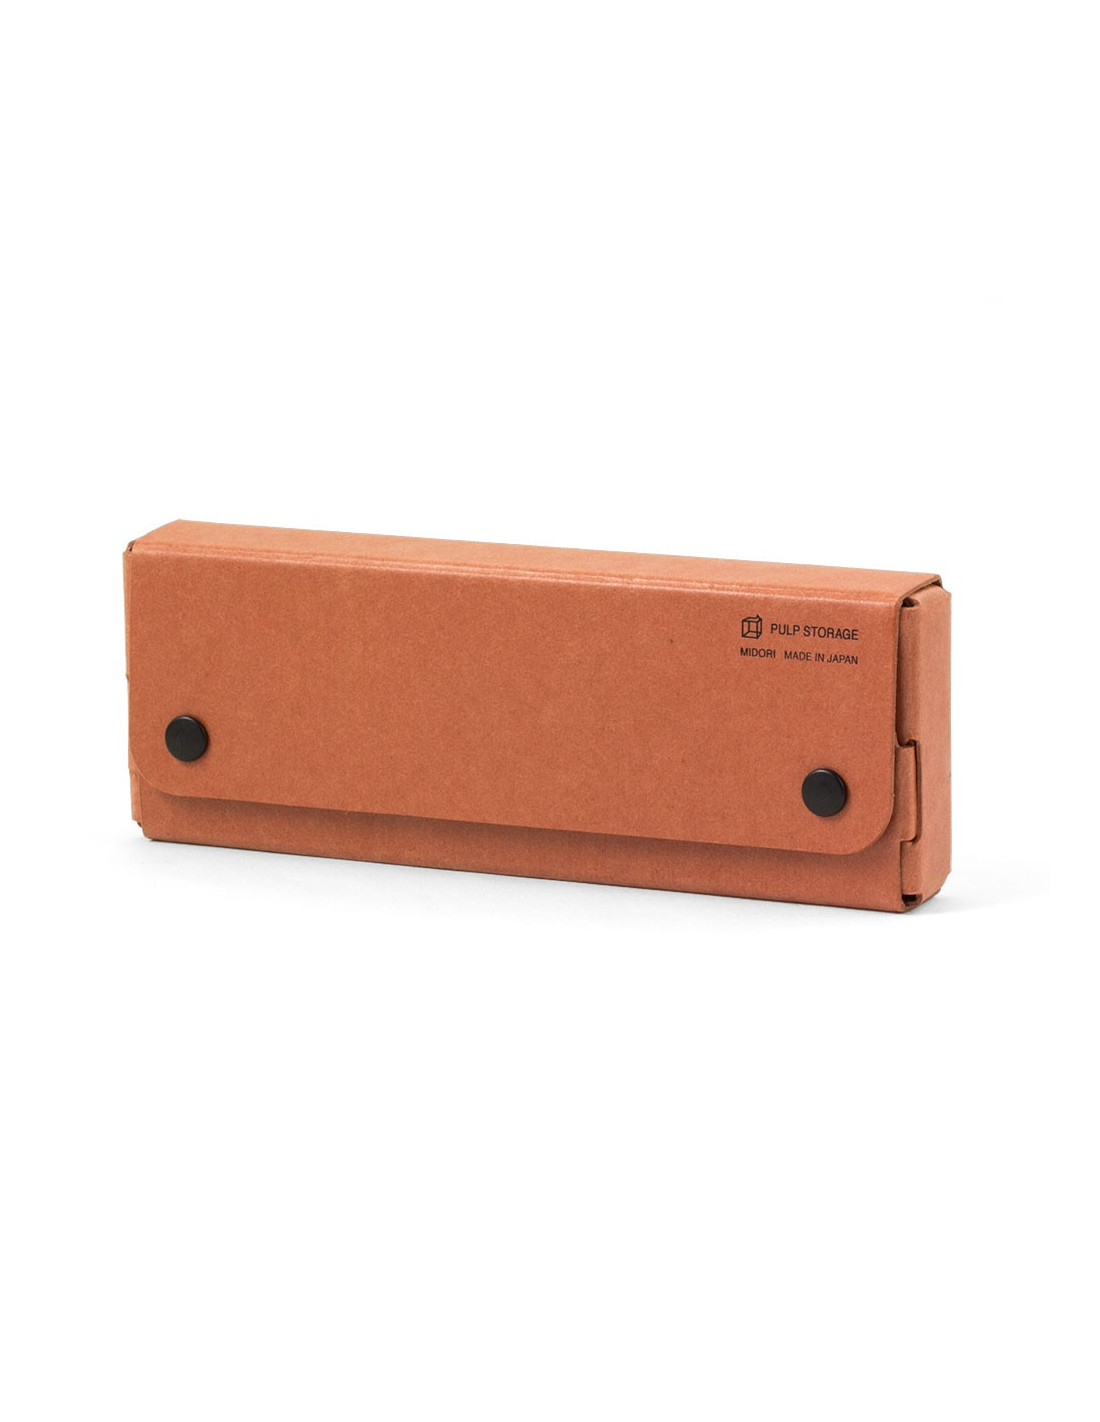 PASCO Pen Case - Copper - Pulp Storage Midori